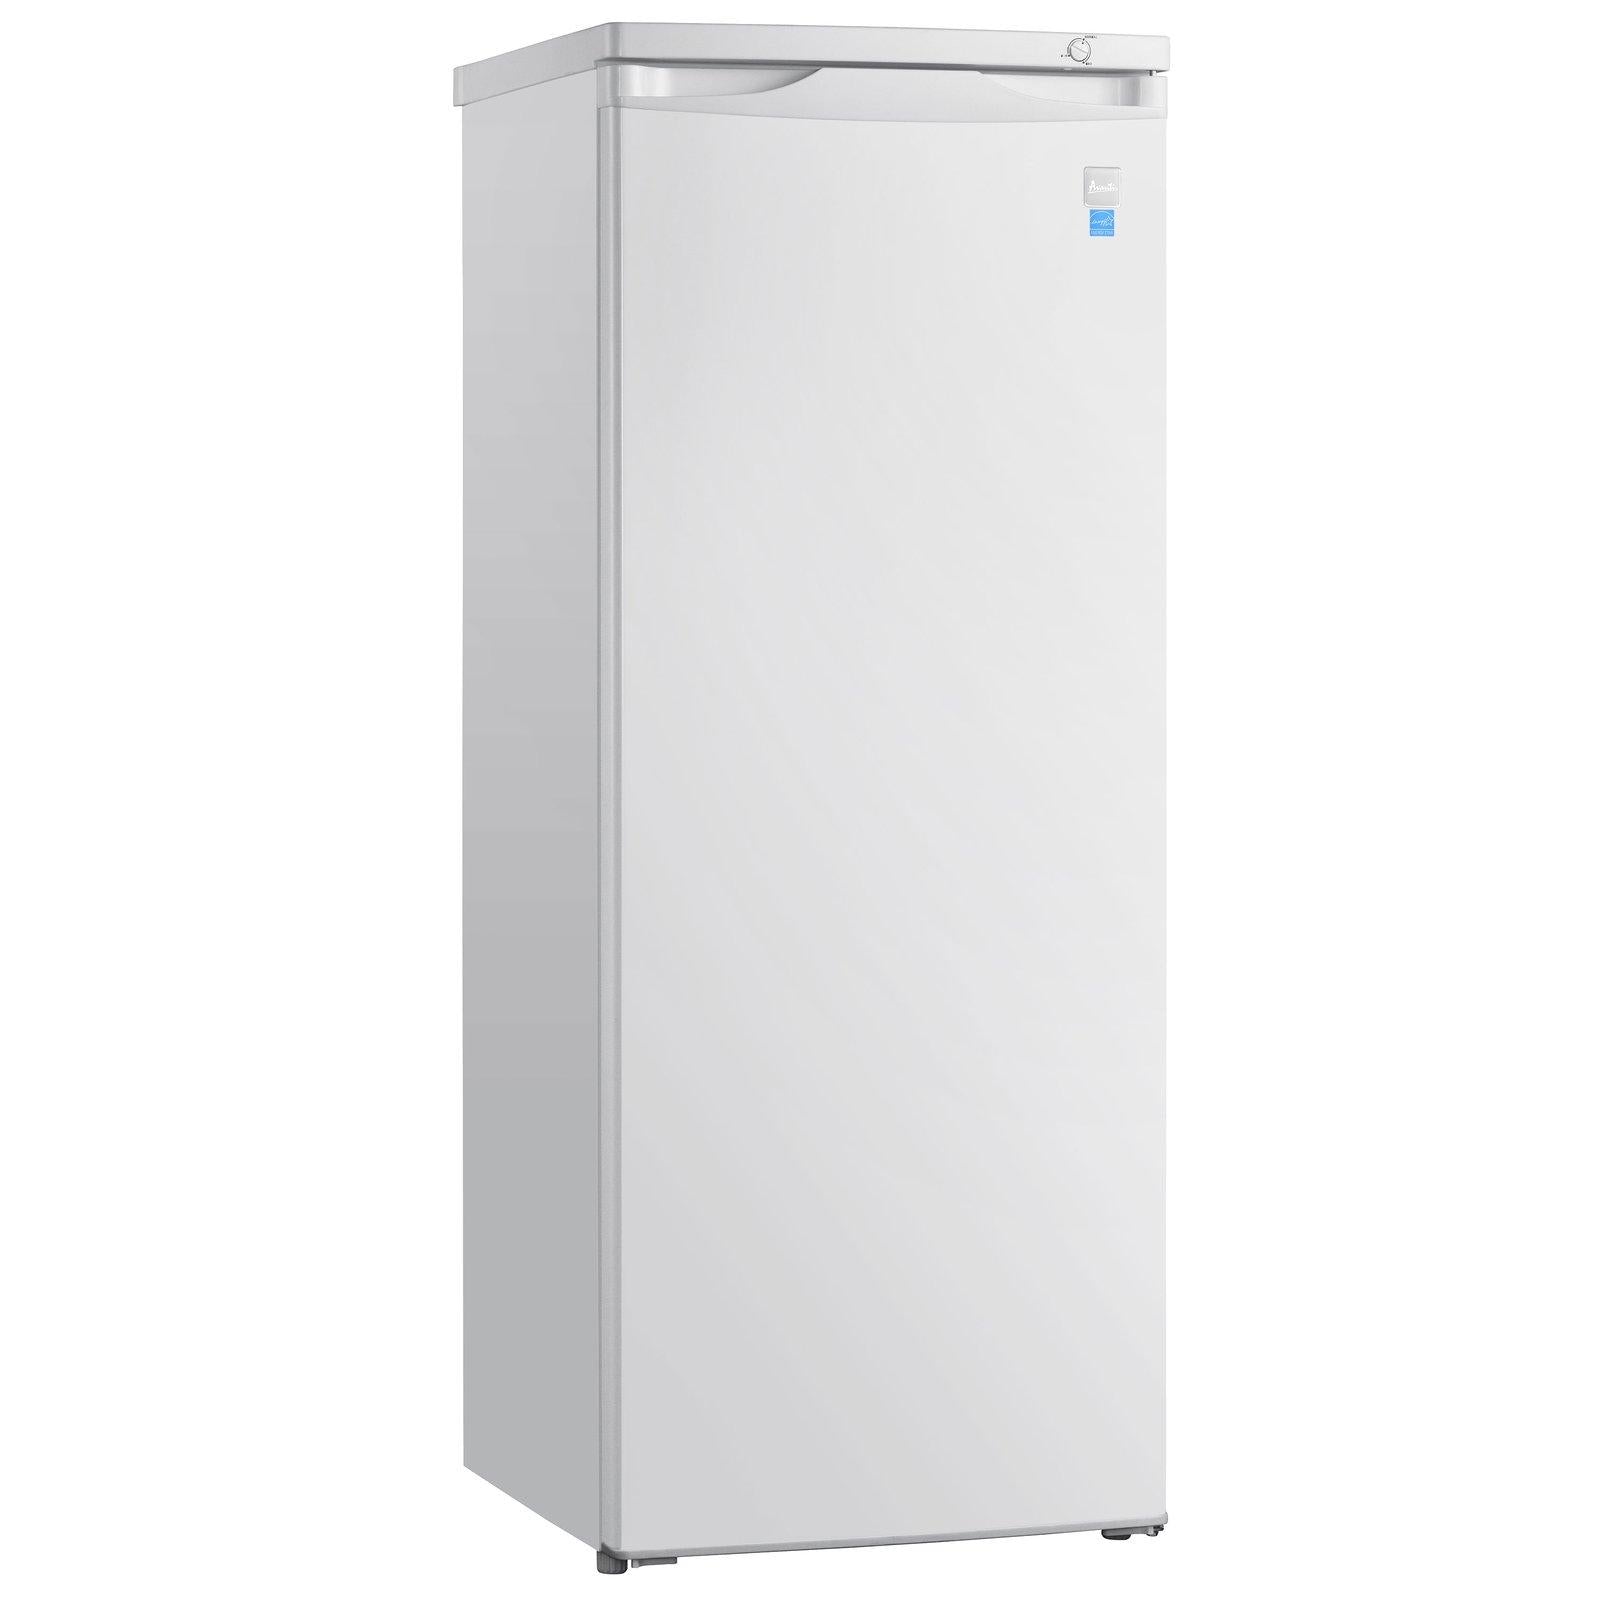 Avanti - VFR14PS-IS, Avanti 1.4 cu. ft. Refrigerator or Freezer, Mini